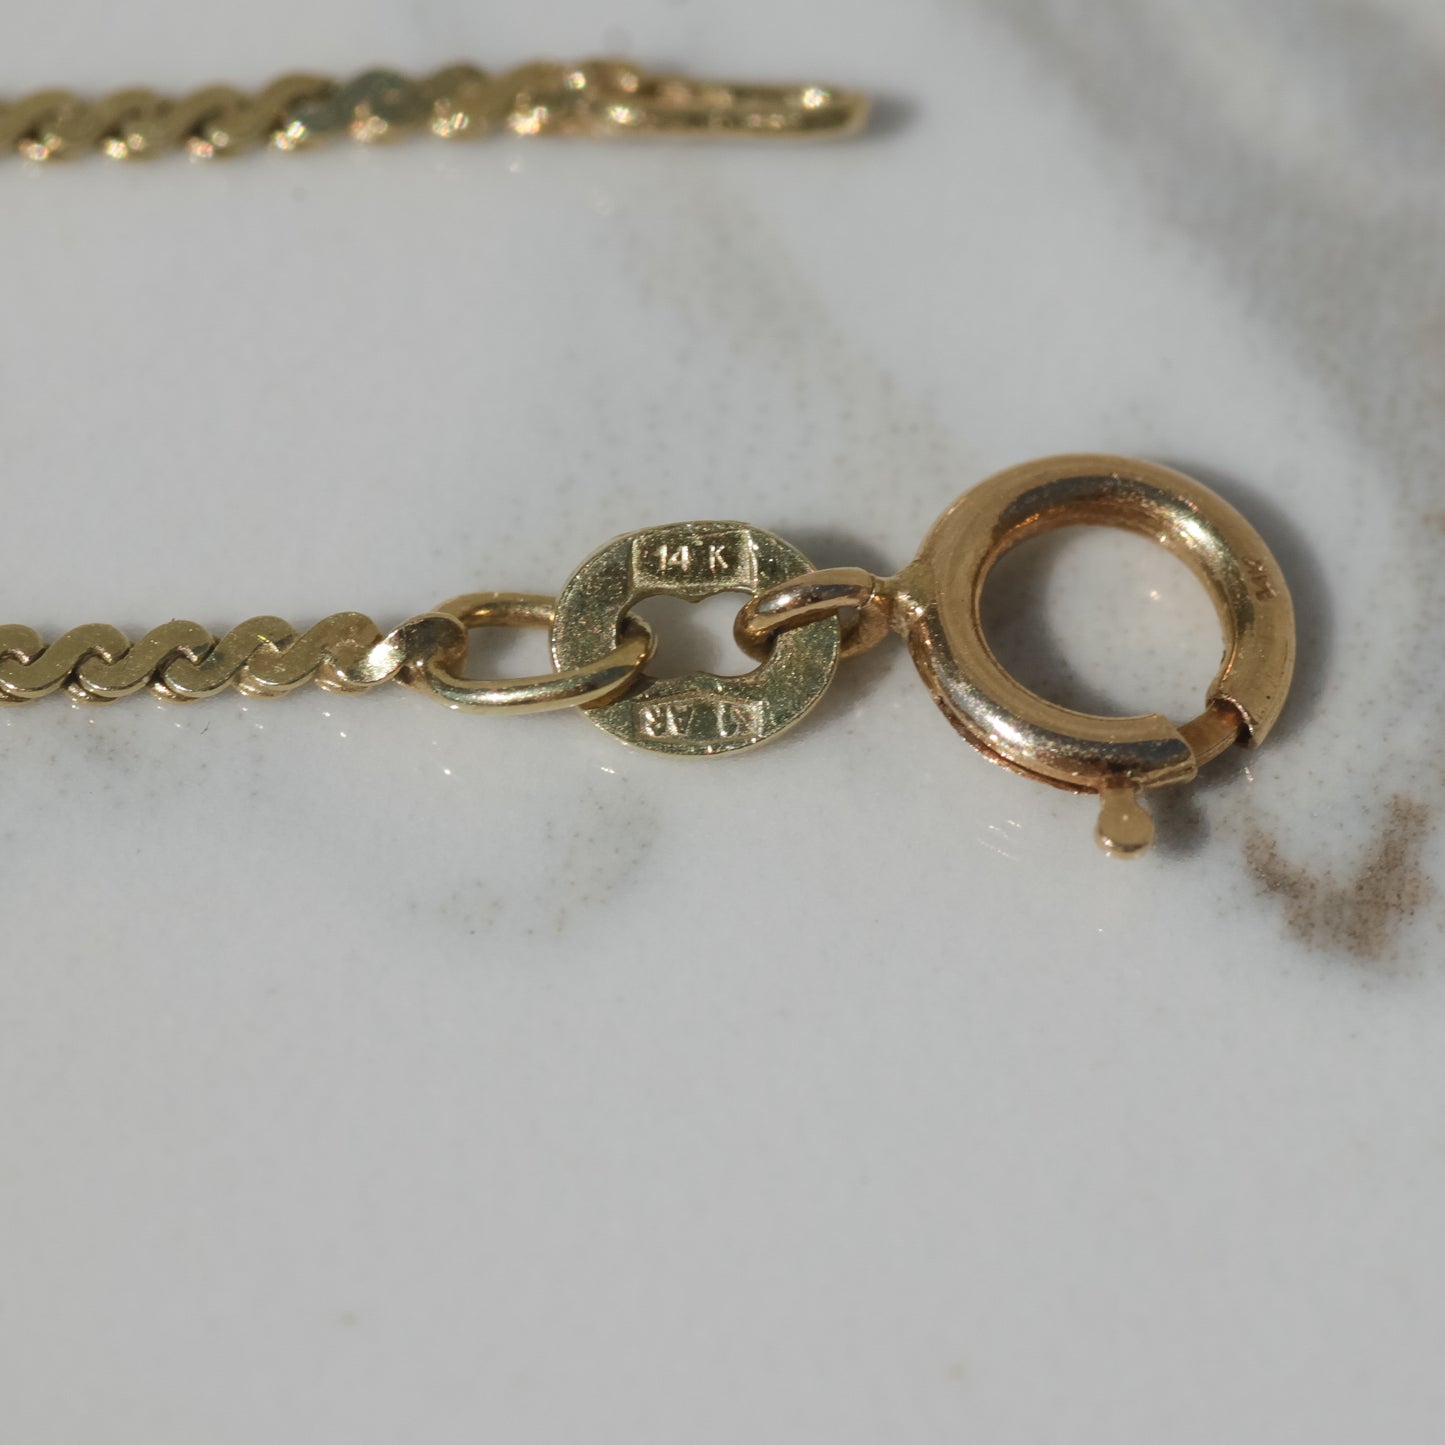 Vintage Serpentine Chain Necklace 15" 14k Gold